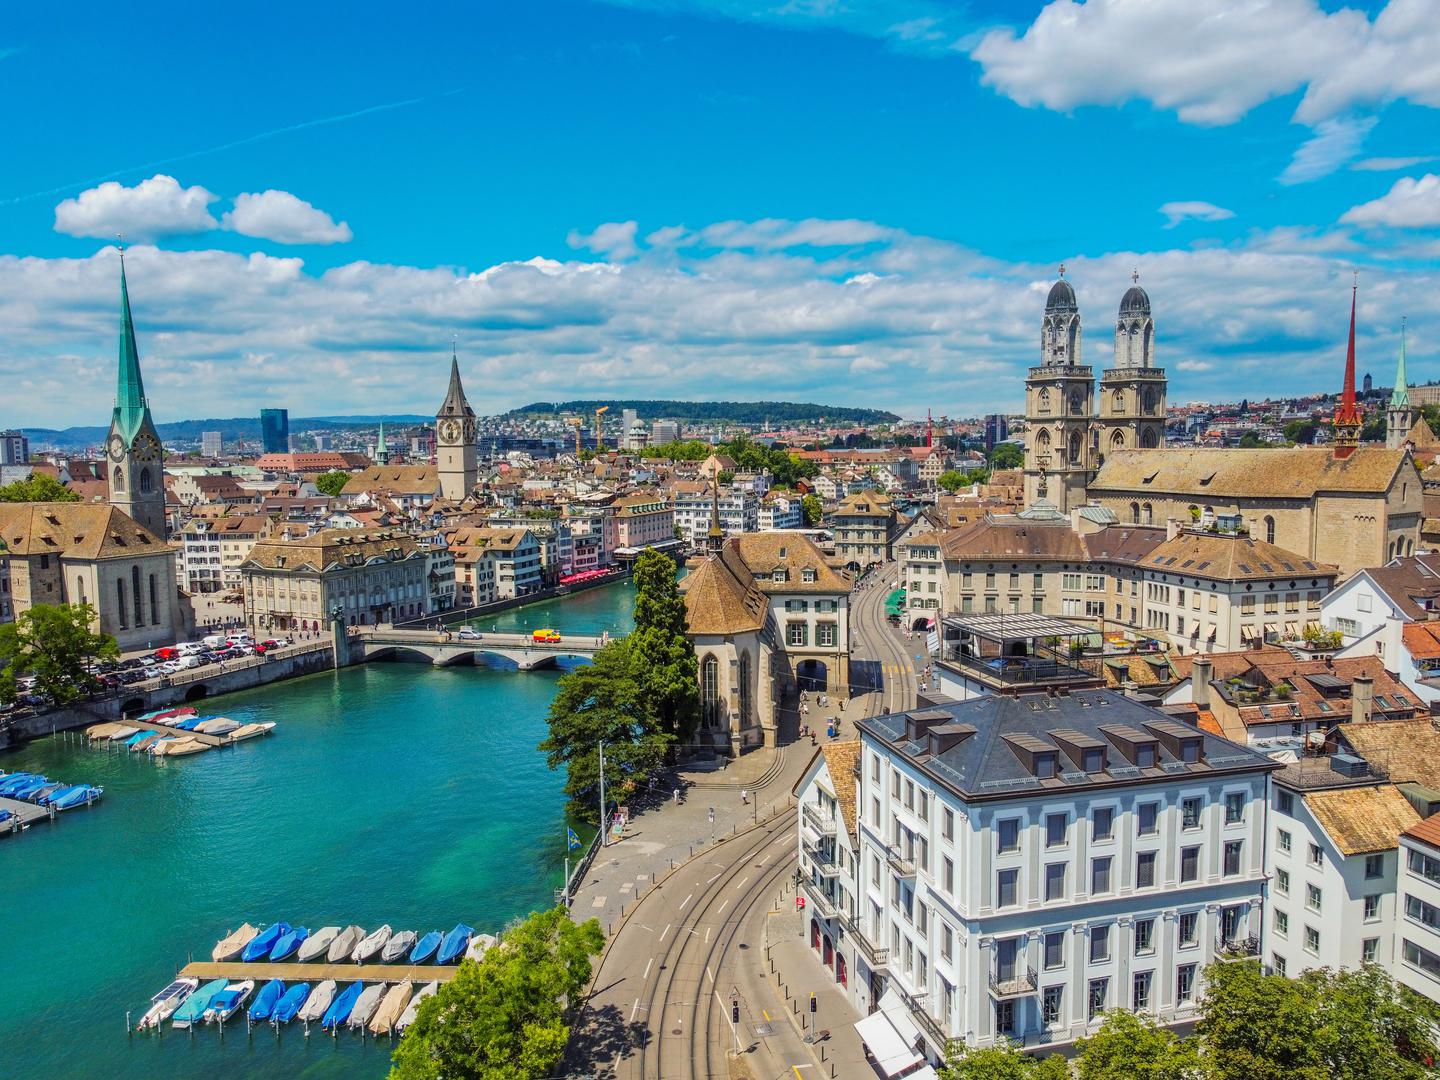 Zurich, Švicarska: Švicarski grad Zürich zauzeo je prvo mjesto, prema istraživanju, s 97 posto stanovnika koji su zadovoljni životom u njemu. Slično kao i Ženeva, Zürich je globalno središte bankarskih i financijskih usluga. Nalazi se na sjevernom rubu Ciriškog jezera na sjeveru zemlje. Osim ekonomske ponude, grad u sebi ima i slikoviti Stari grad koji se nalazi s obje strane rijeke Limmat.